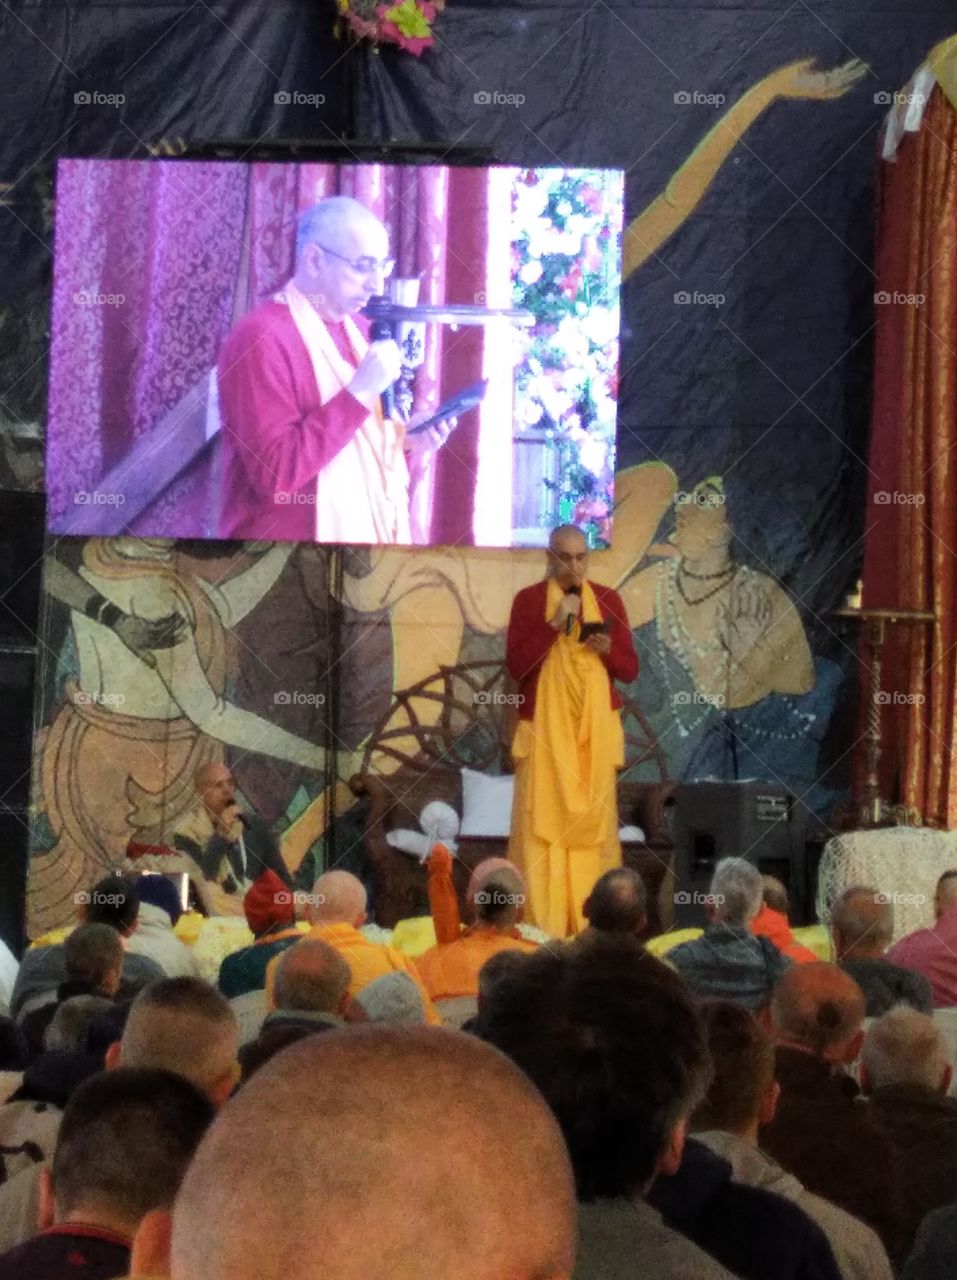 Opening ceremony of the Bhakti Sangama festival 2019